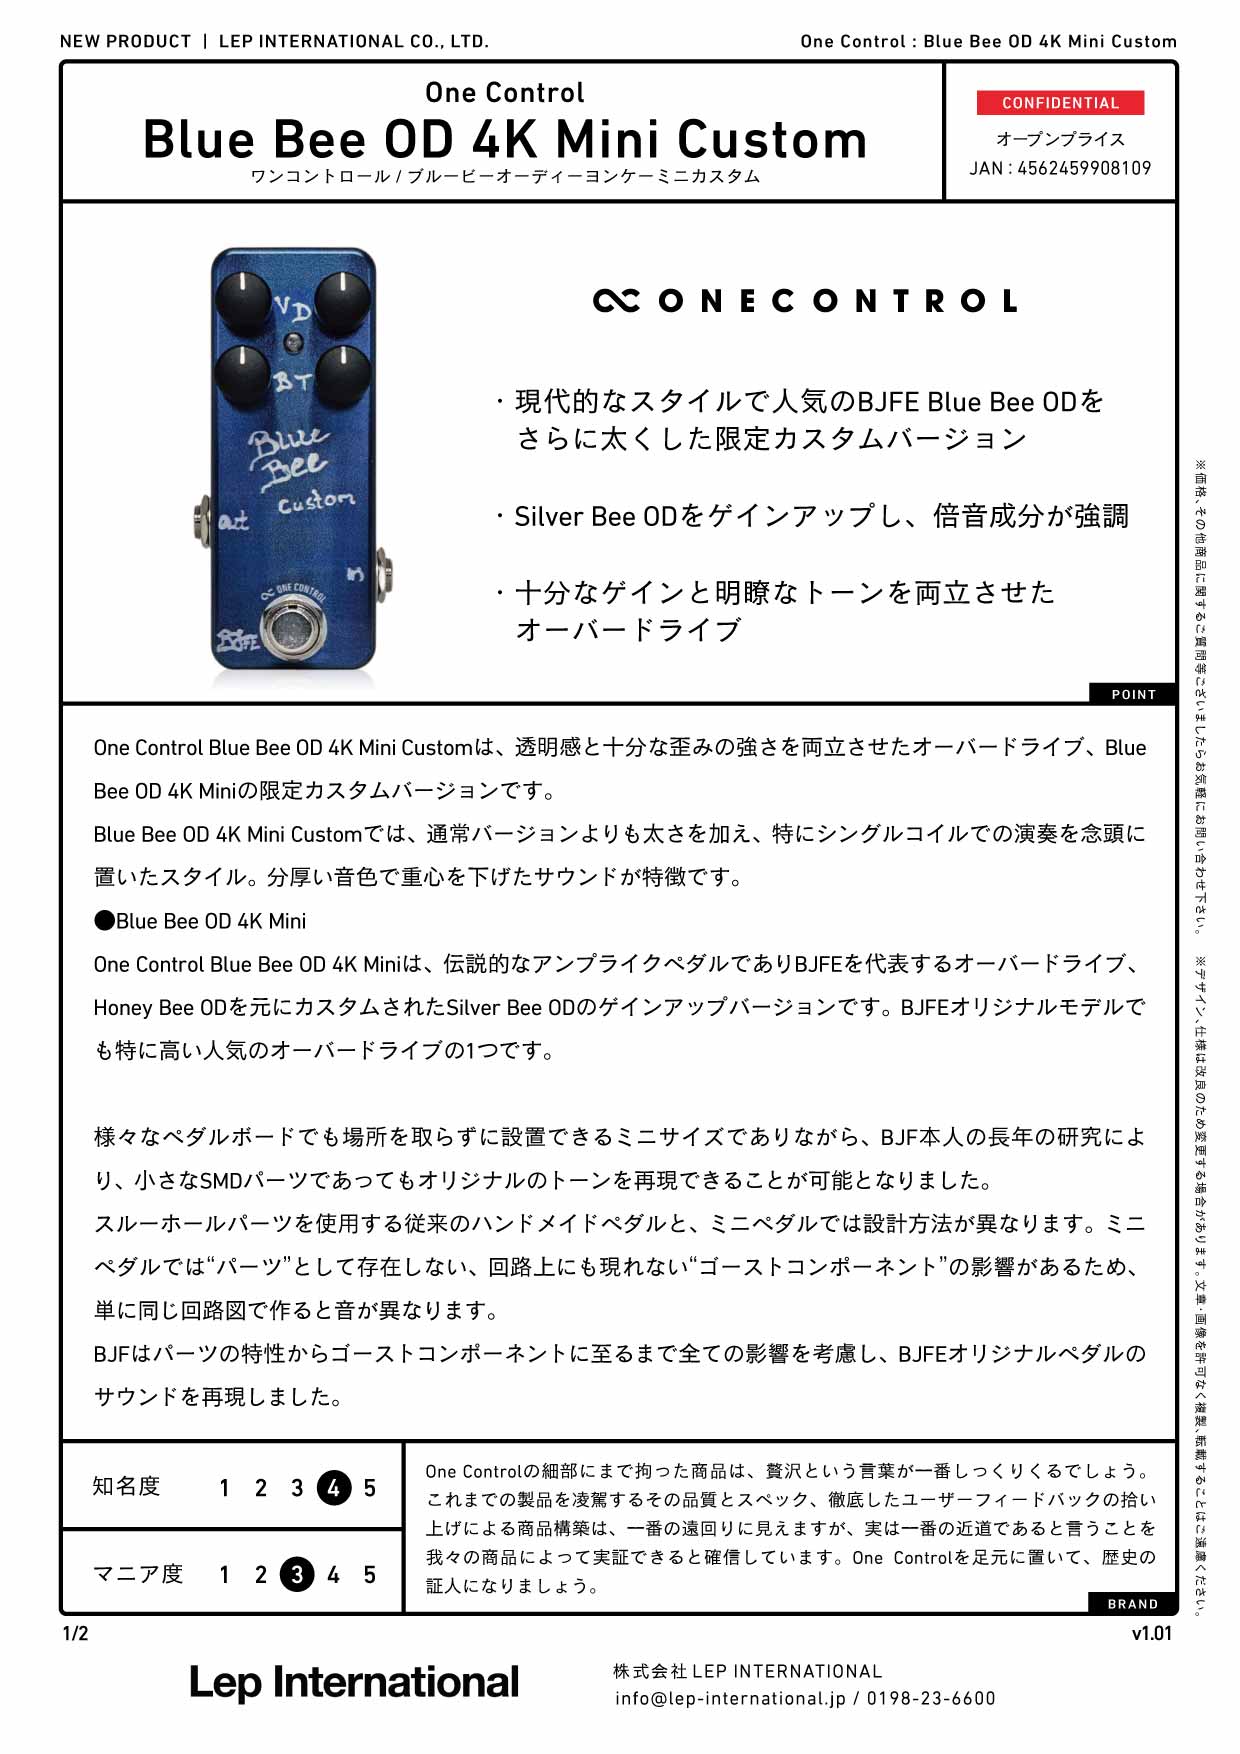 One Control / Blue Bee OD 4K Mini Custom